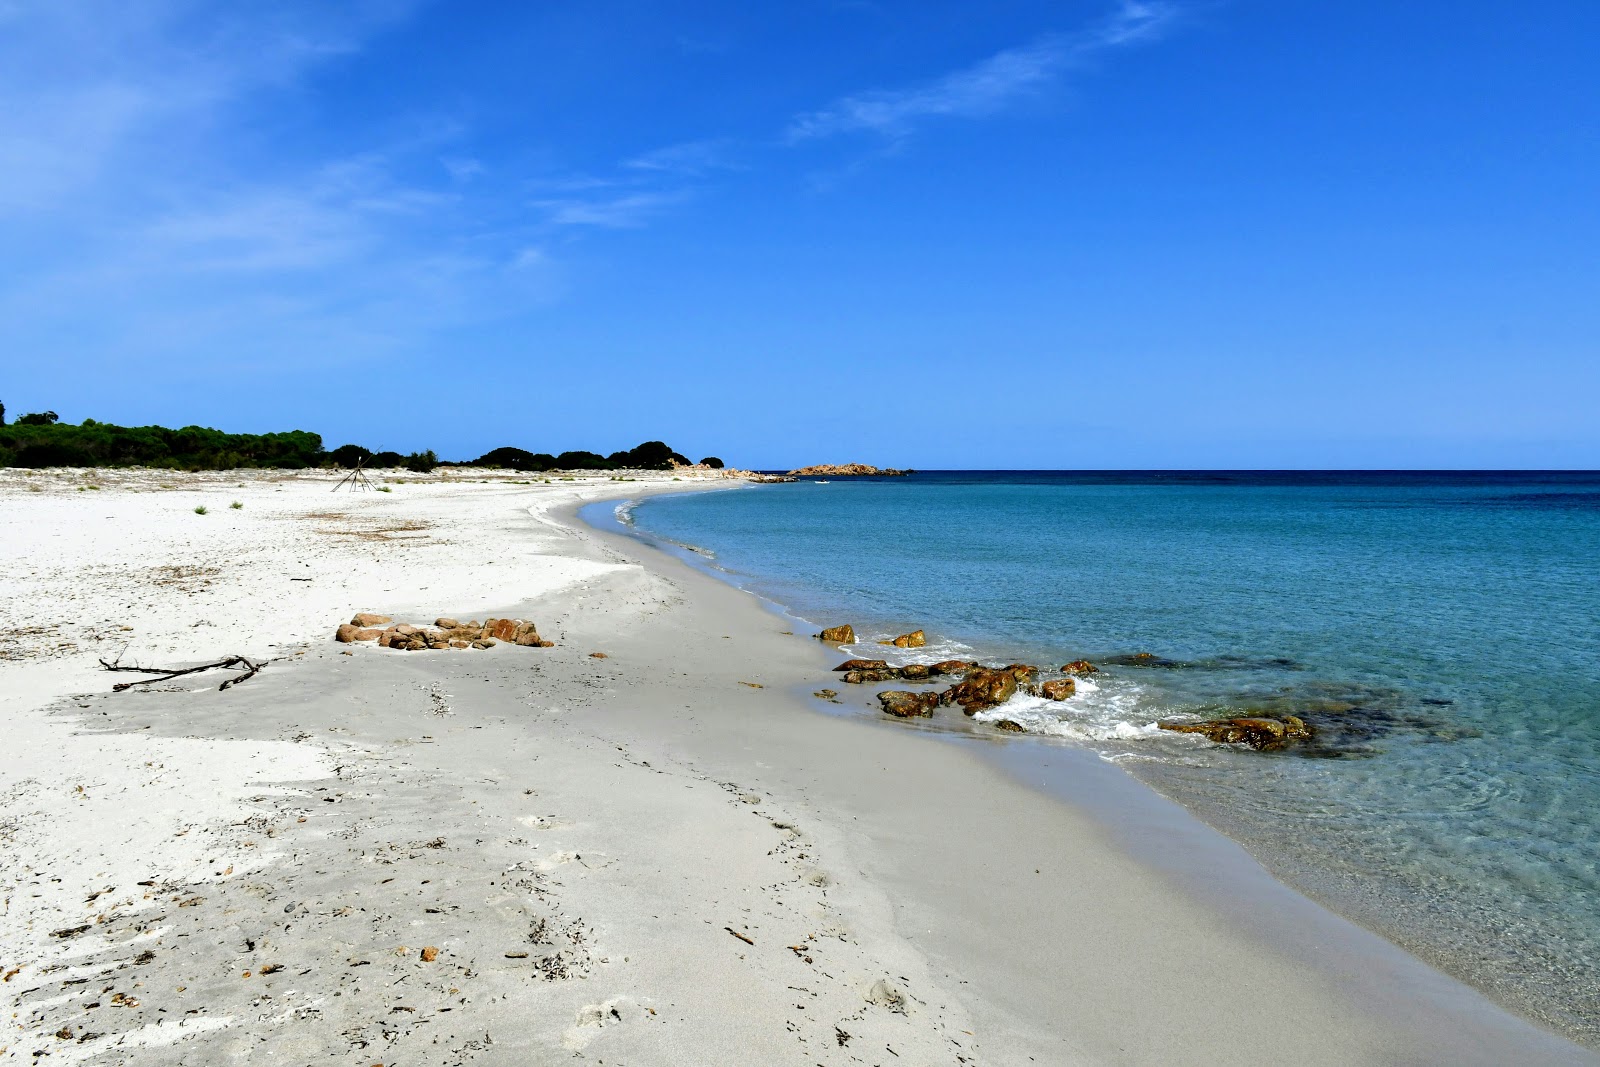 Spiaggia Cannazzellu'in fotoğrafı parlak kum yüzey ile